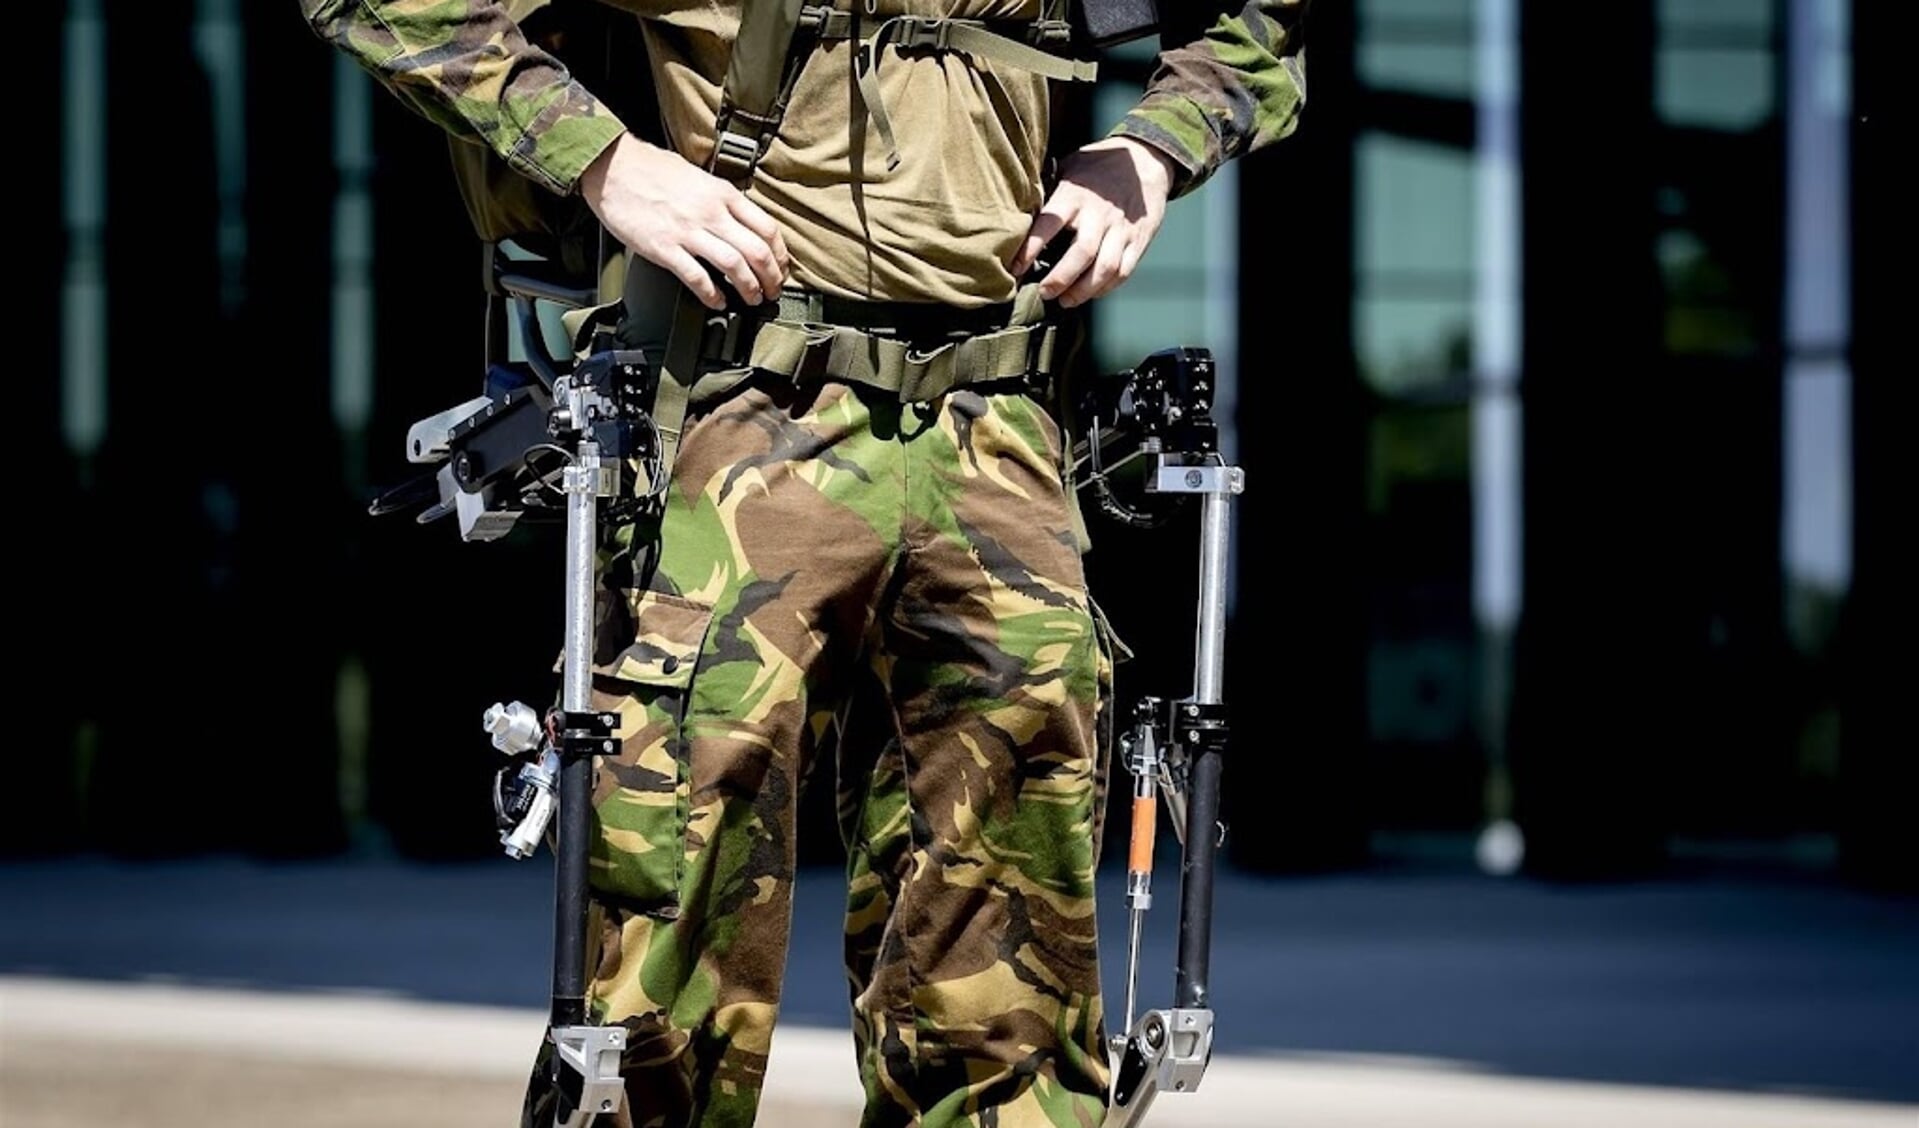 Medewerker vast om militaire kleding Marktplaats Nederlands Dagblad. De kwaliteitskrant van christelijk Nederland